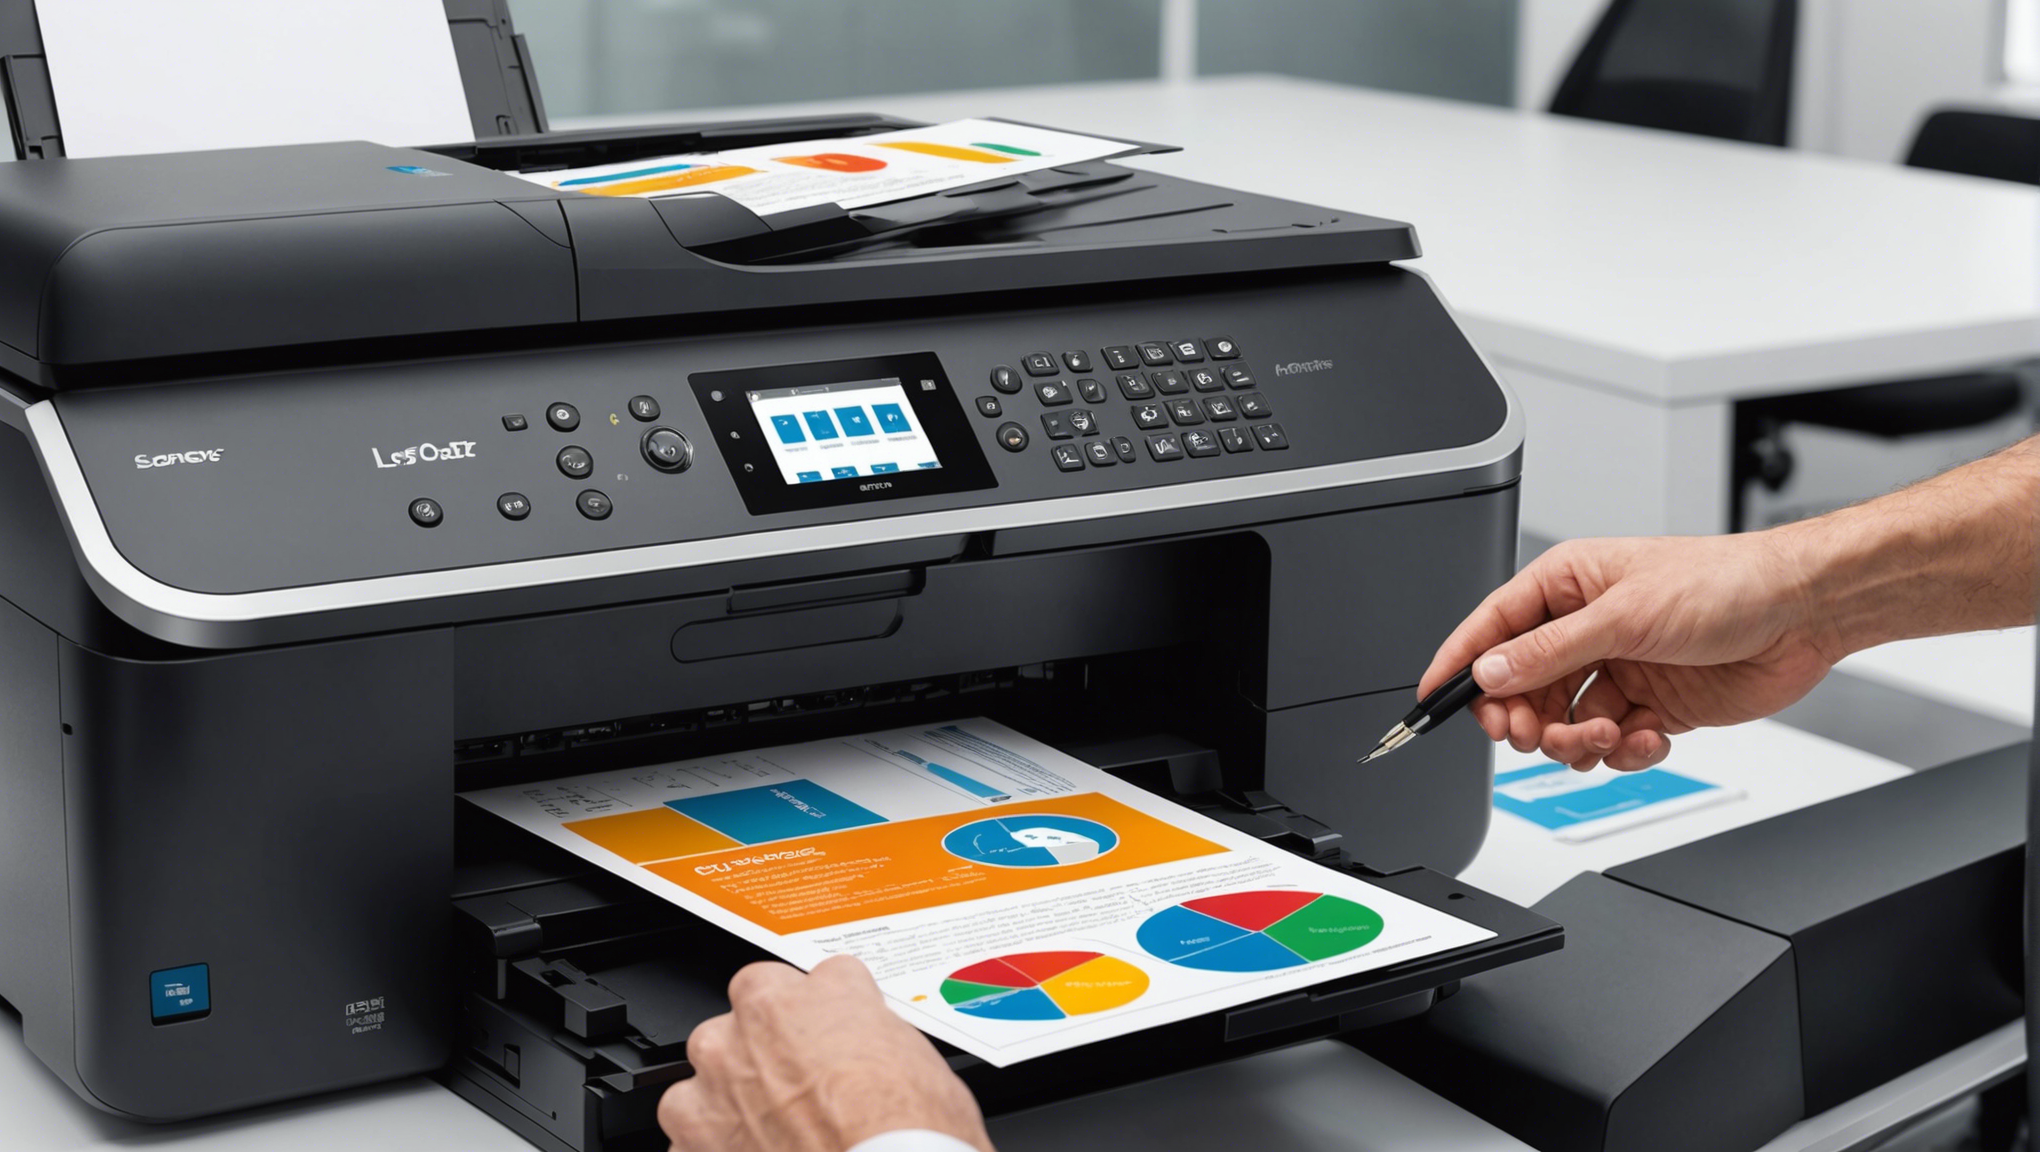 découvrez les meilleurs endroits pour acheter des imprimantes professionnelles abordables et de qualité. trouvez des conseils pour trouver les imprimantes professionnelles à prix abordables qui répondent à vos besoins.